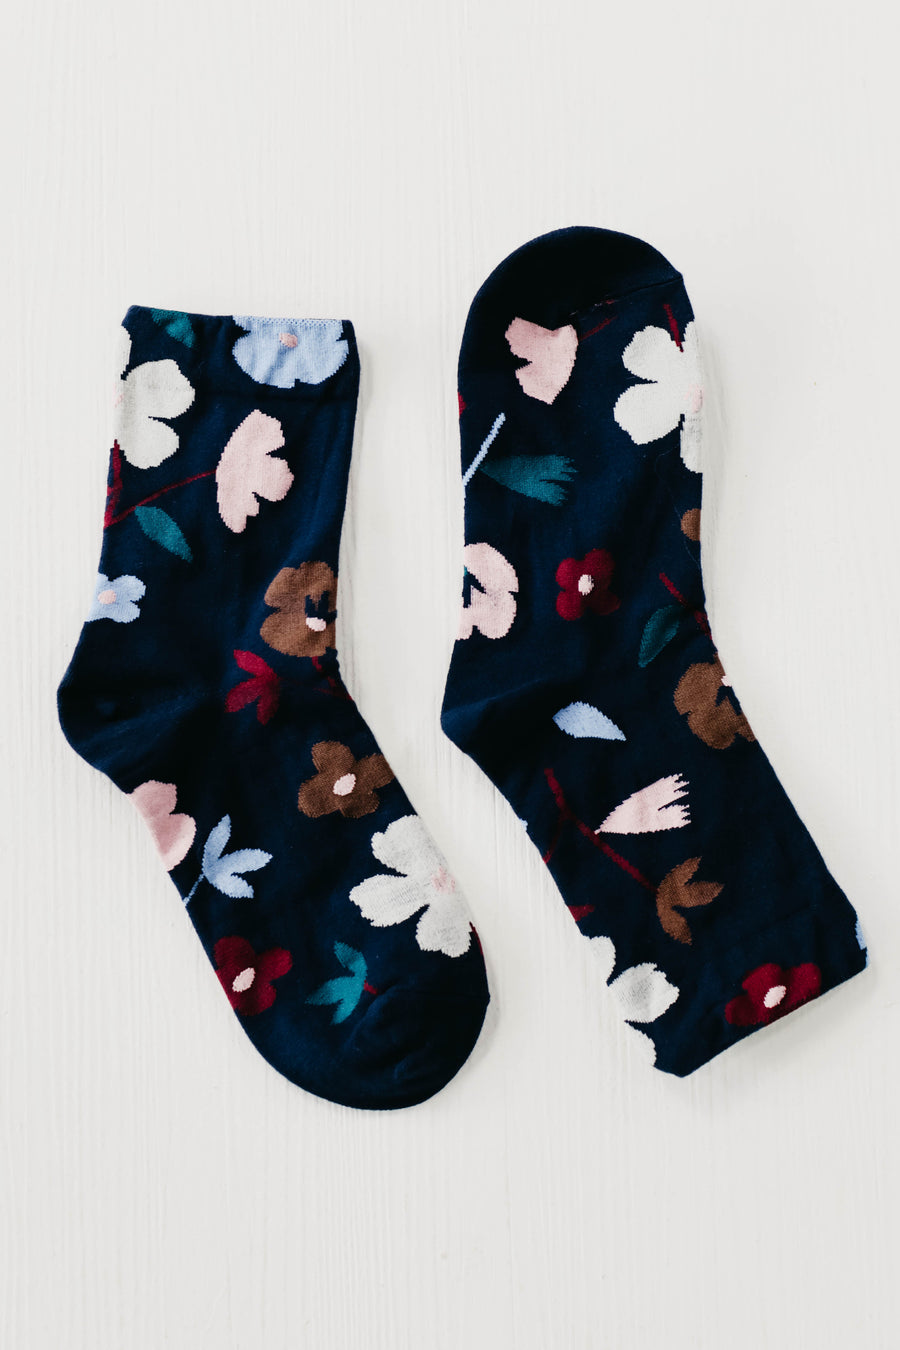 The Flower Power Socks